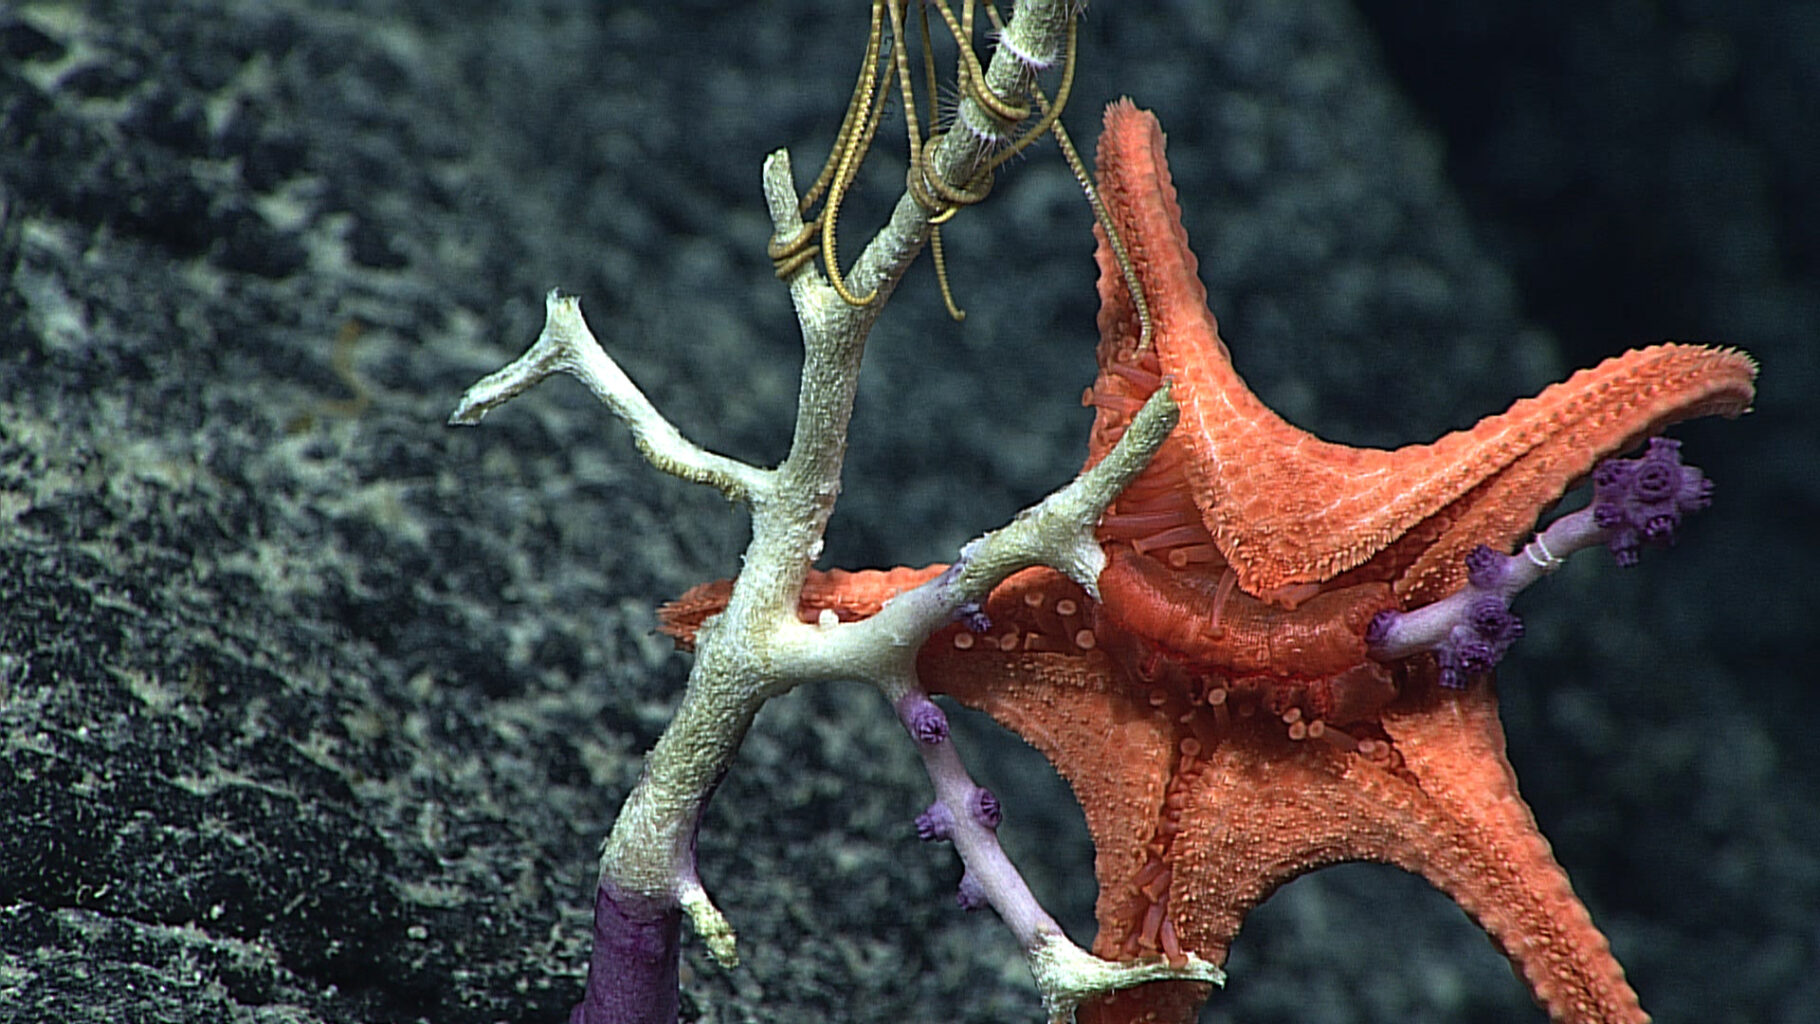 Red deep sea seastar eating coral